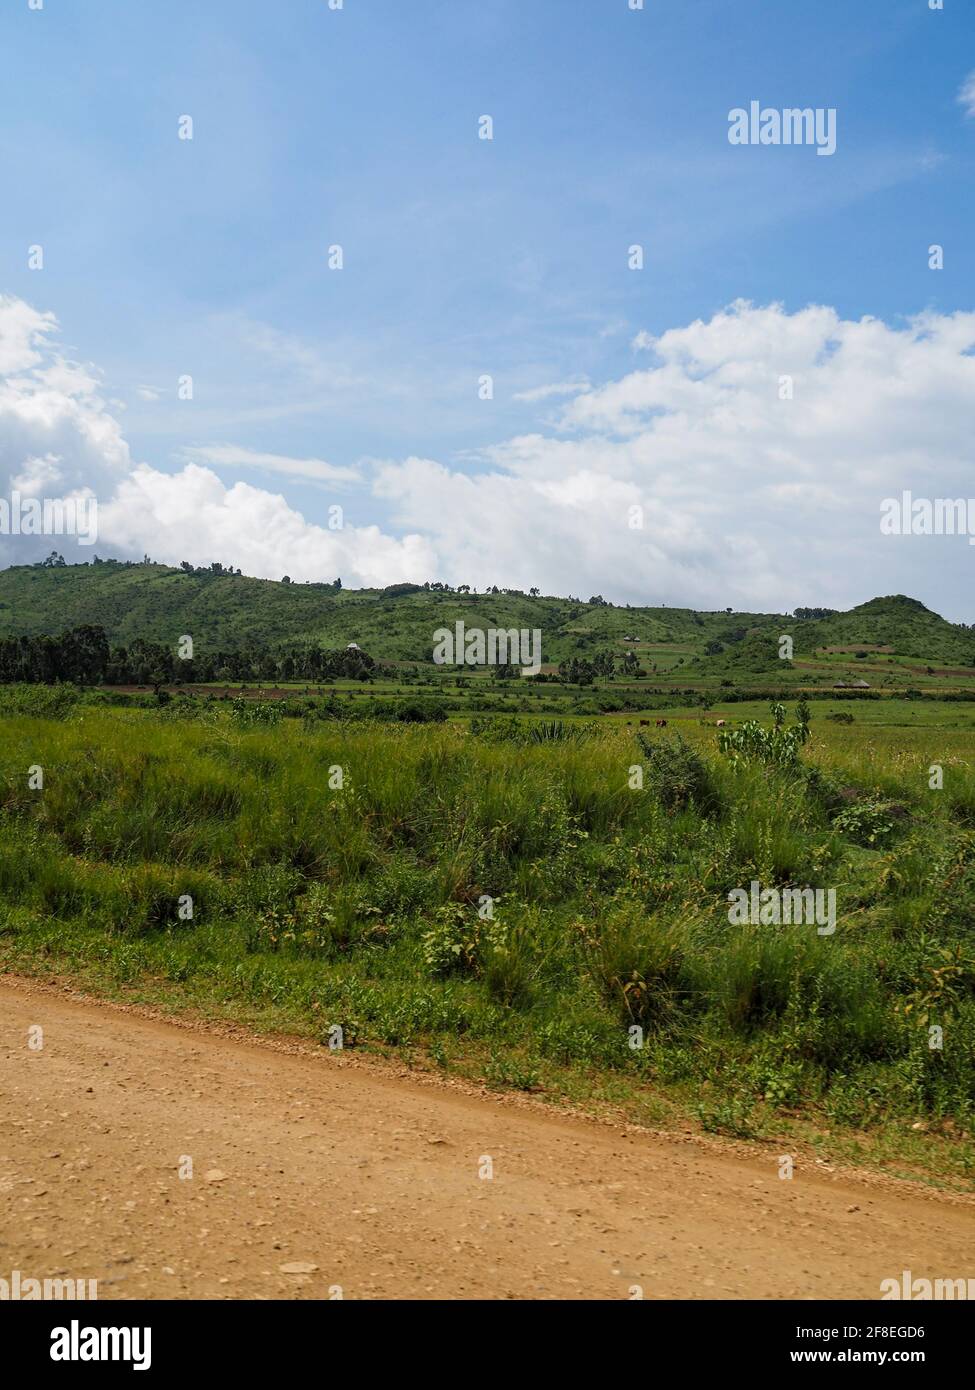 Tanzanie, Afrique - 27 février 2020 : paysage vert luxuriant le long de la route de terre en Tanzanie Banque D'Images